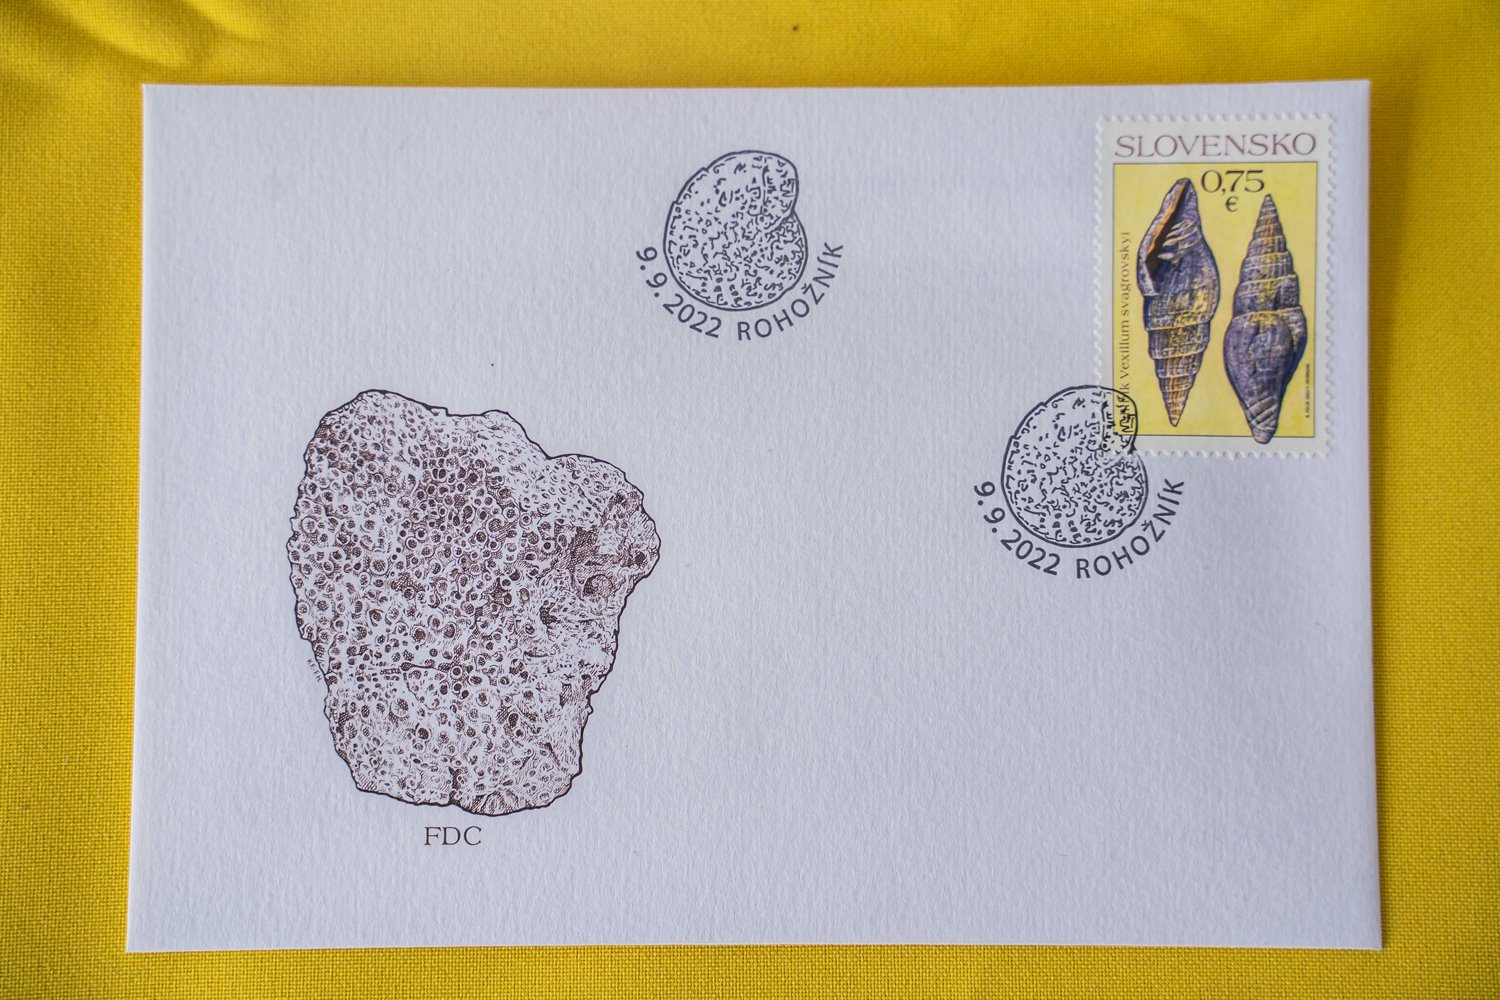 Obálka prvého dňa vydania (FDC) s poštovou známkou ulitníka Vexillum svagrovskyi z lokality Konopiská pri Rohožníku, grafickým zobrazením koralu Heliastrea reussiana zo Štokeravskej vápenky a štylizovaná pečiatka s motívom mikrofosílie - dierkavca